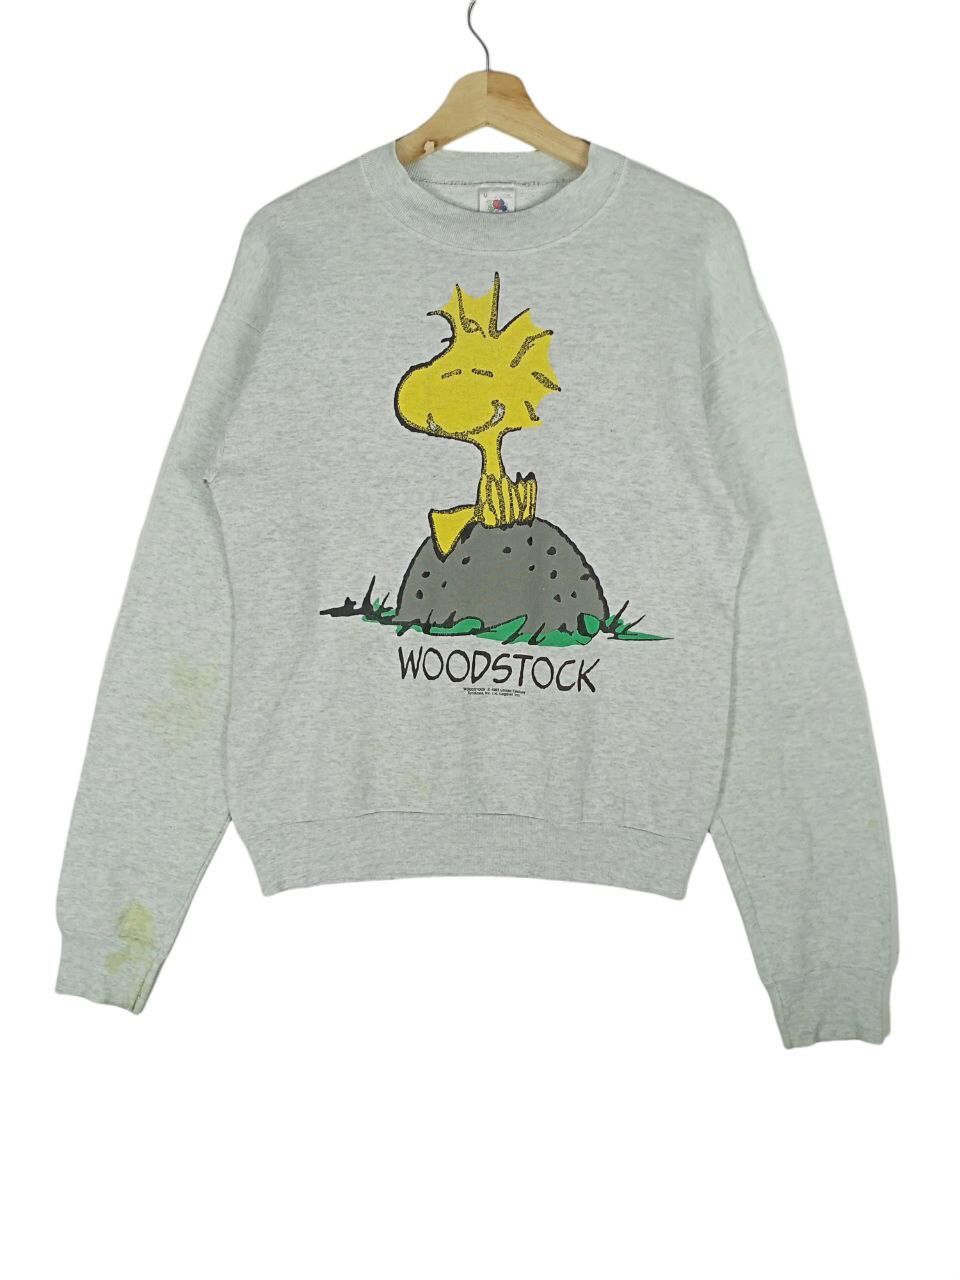 Vintage Vintage Woodstock Snoopy Distressed Sweatshirt | Grailed